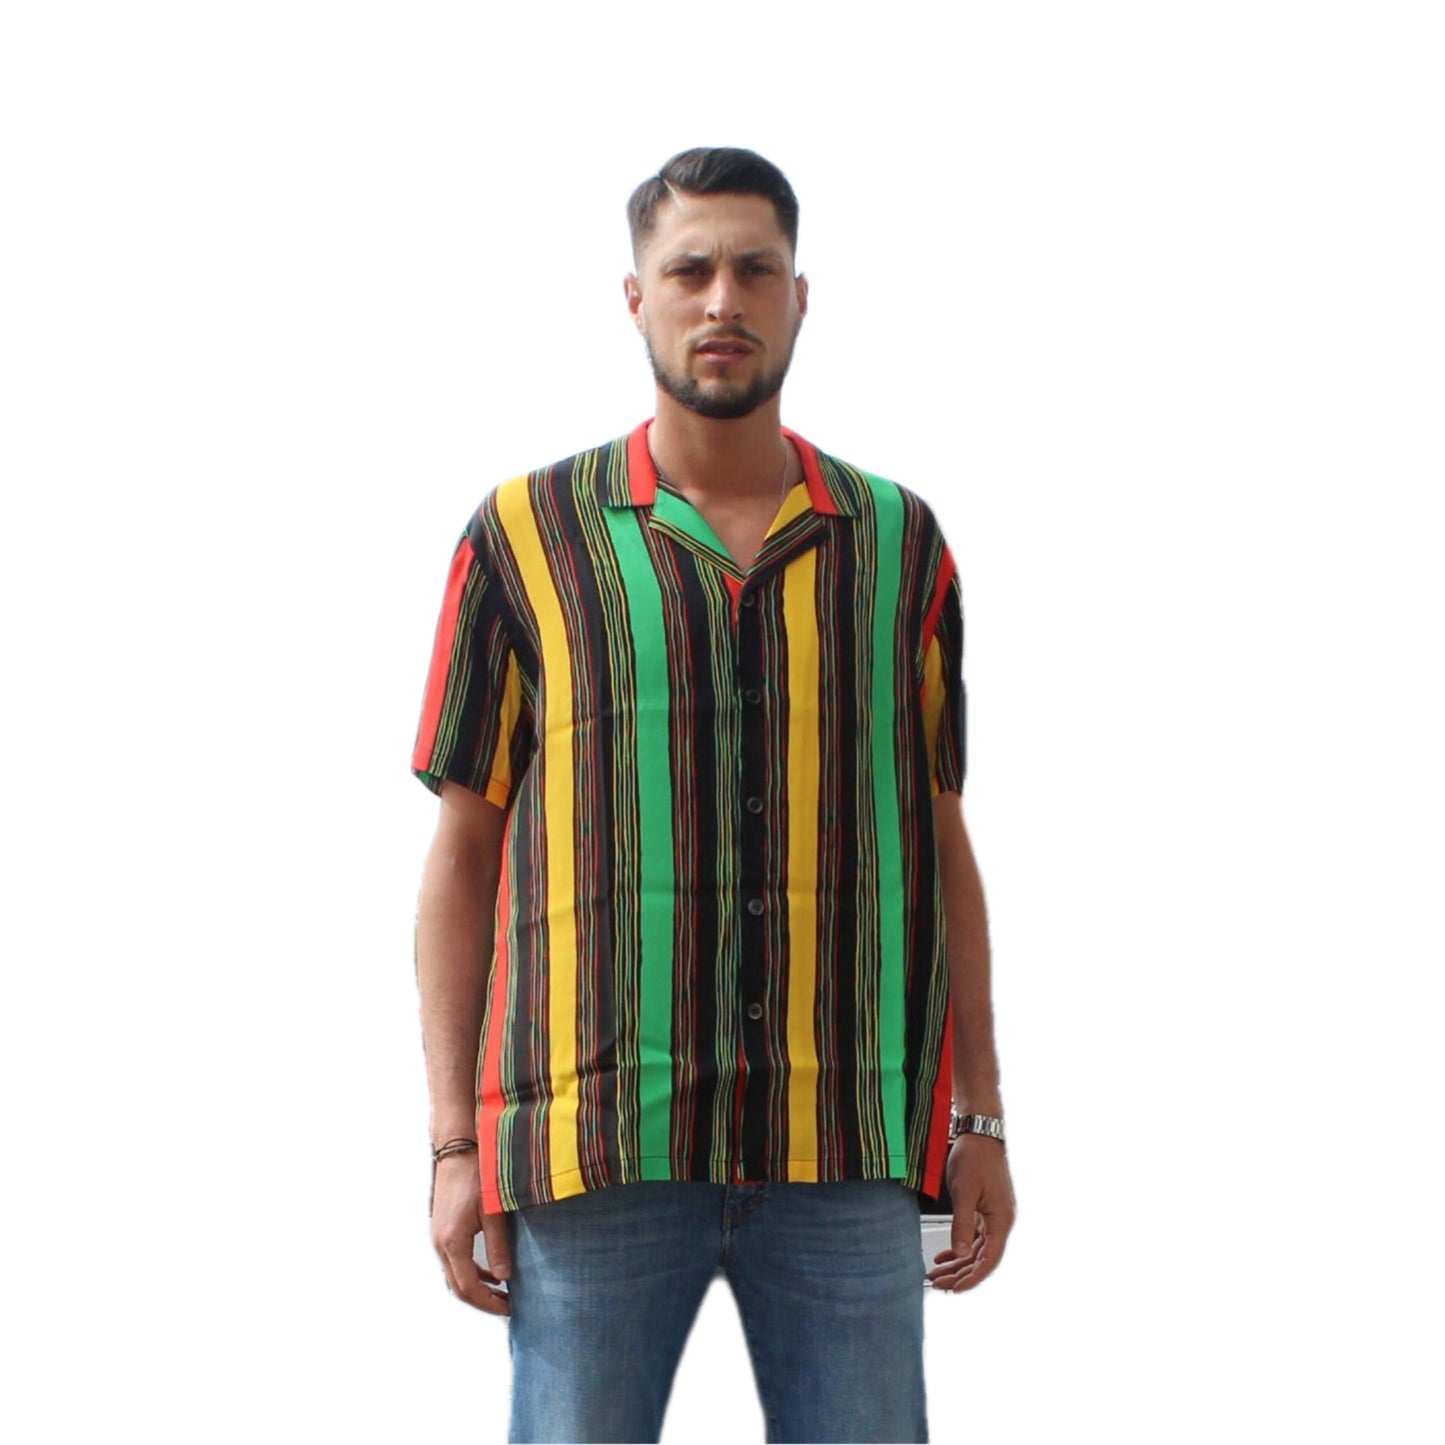 Waxman Brothers - Shirt Hawaiian Stripped Short-Sleeved  code 160